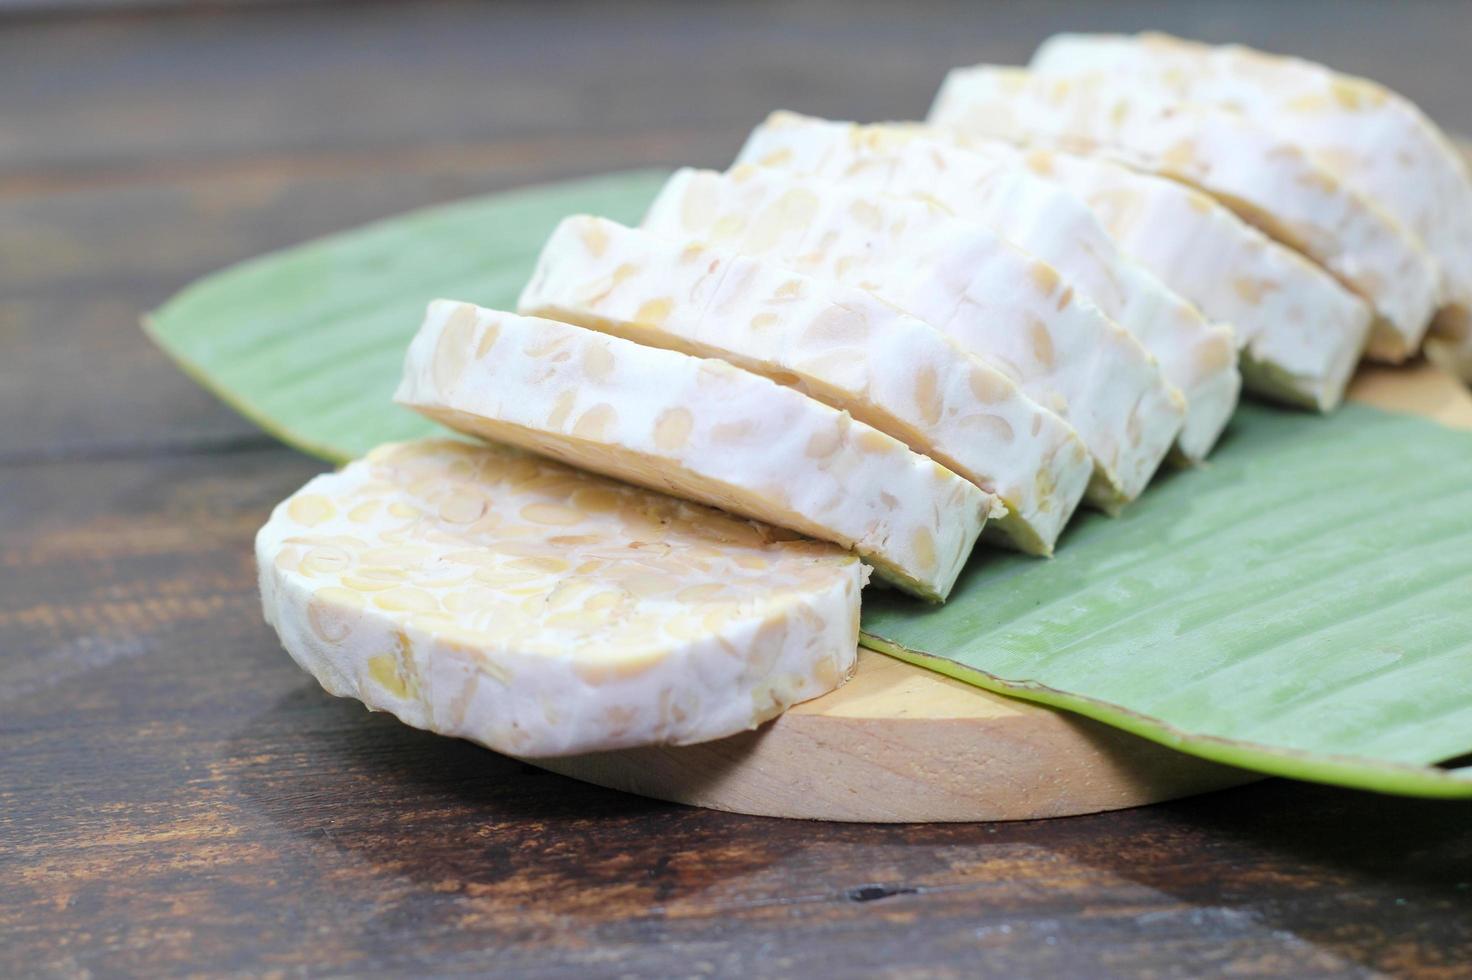 El tempeh o tempe es un alimento tradicional de indonesia elaborado con soja u otros ingredientes que se procesan mediante fermentación y que ya es popular en muchos países. foto